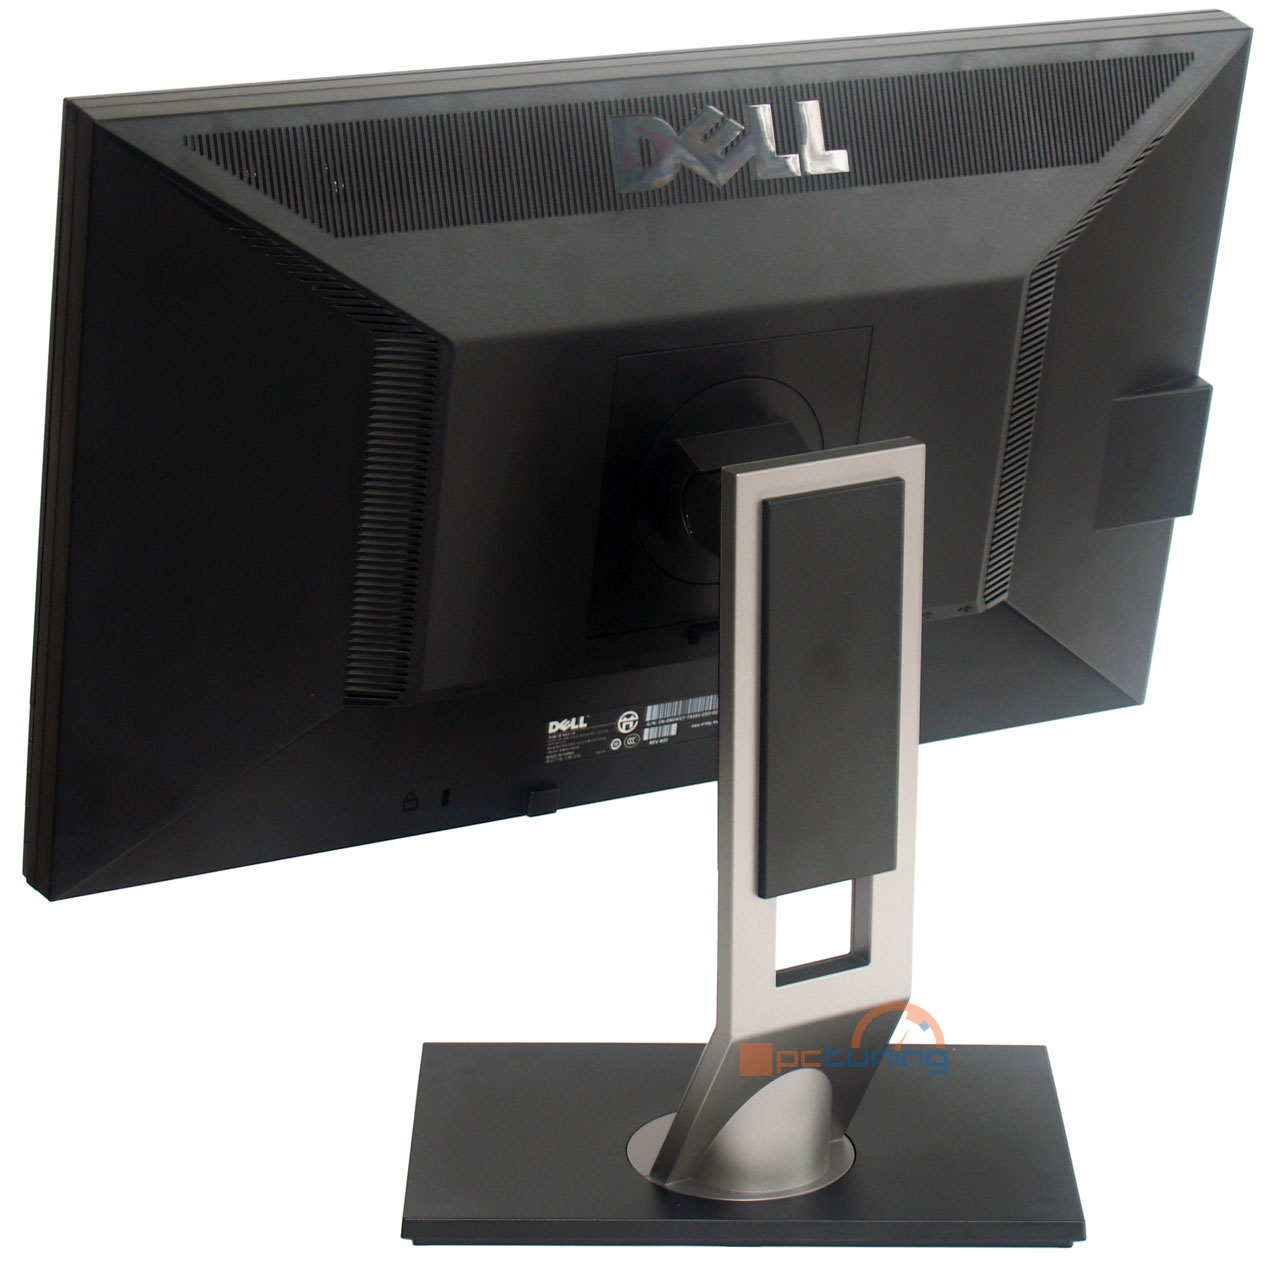 Dell U2311H: e-IPS panel za velice příjemnou cenu